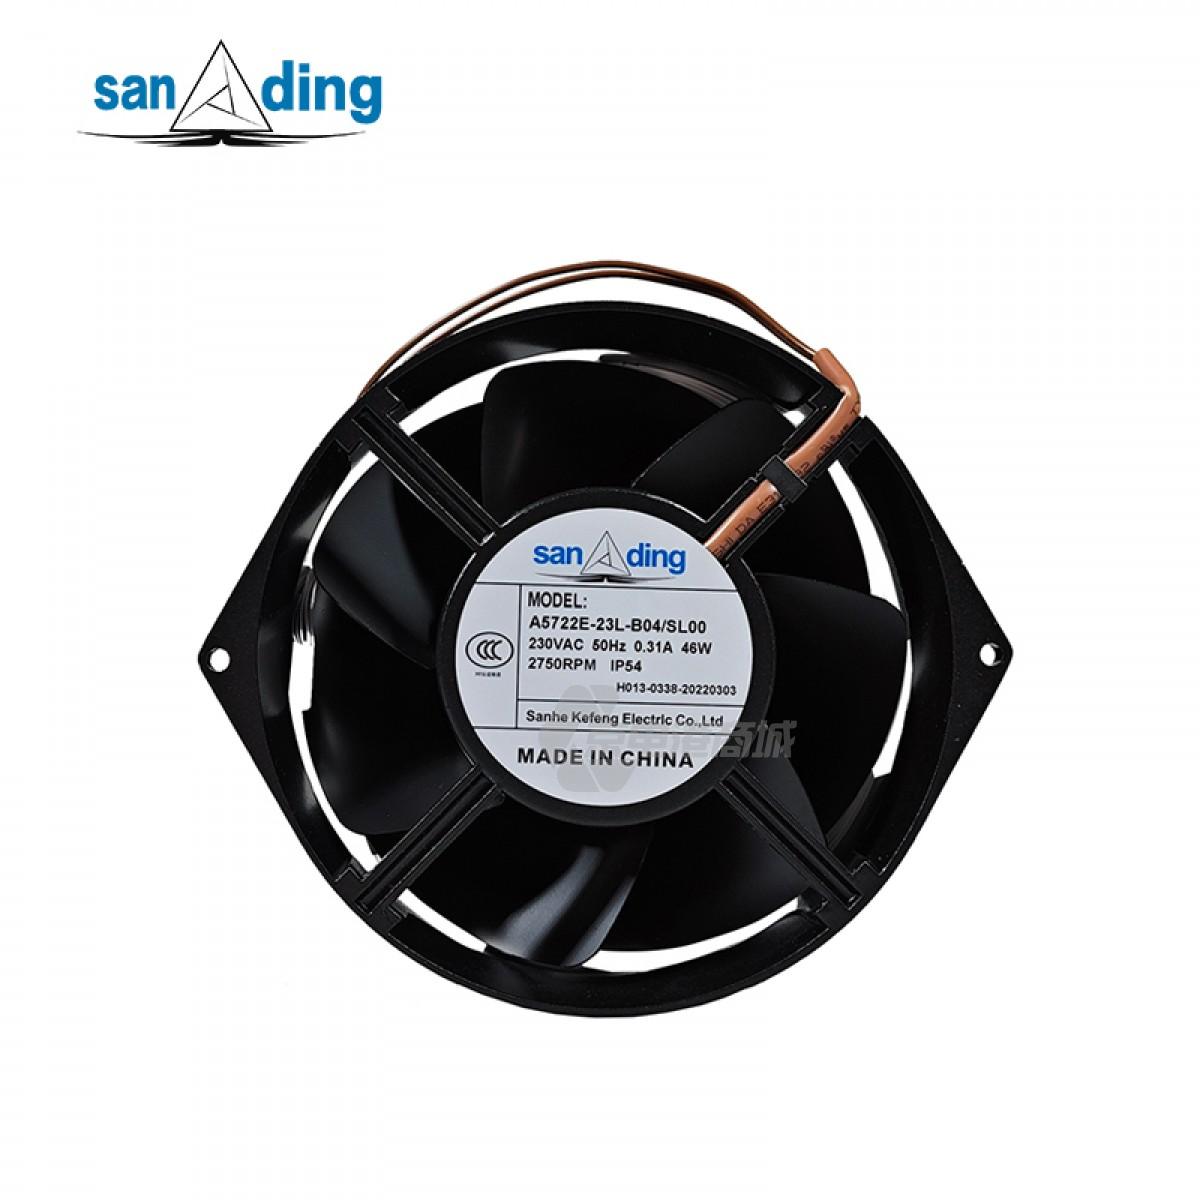 sanding A5415N-23L-B04 230V 0.32A 44W 2750rpm 172×150×55mm 2-wire Metal frame AC fan